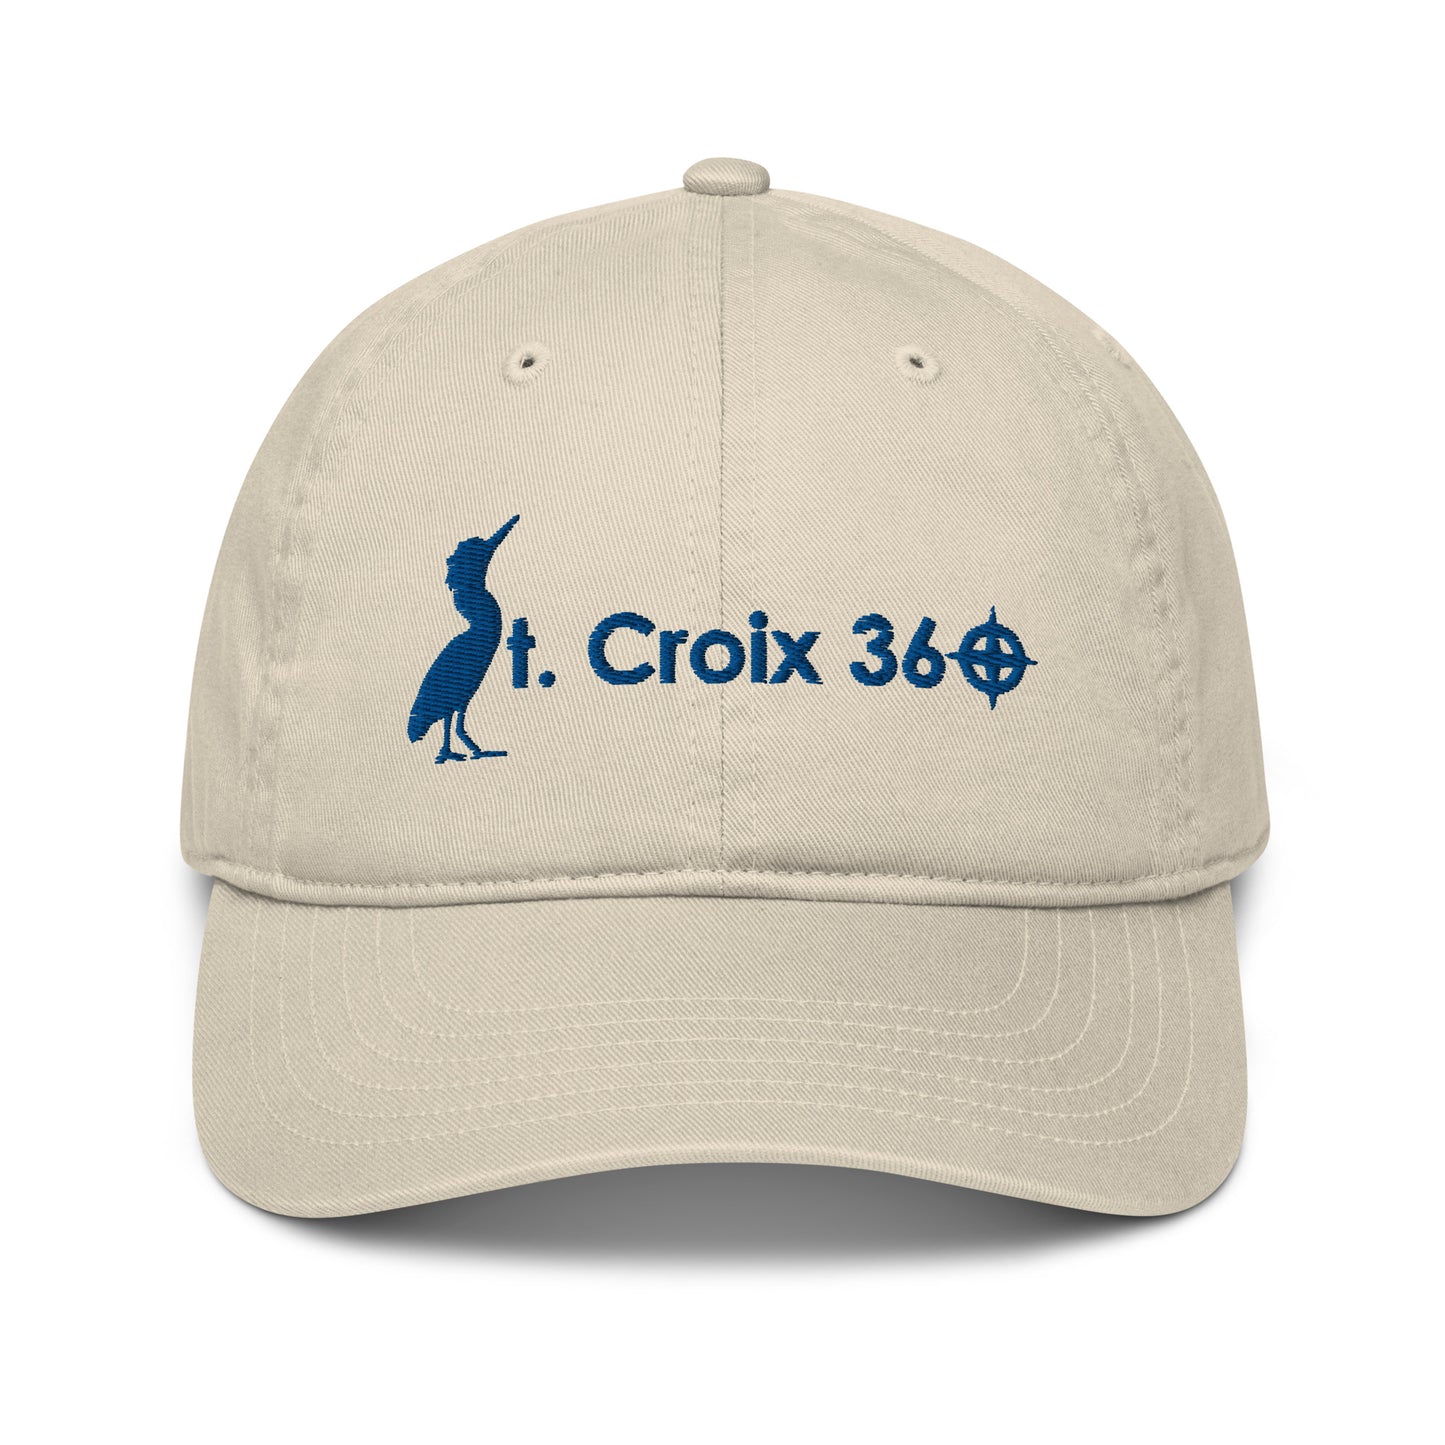 St. Croix 360 Organic Cotton Hat